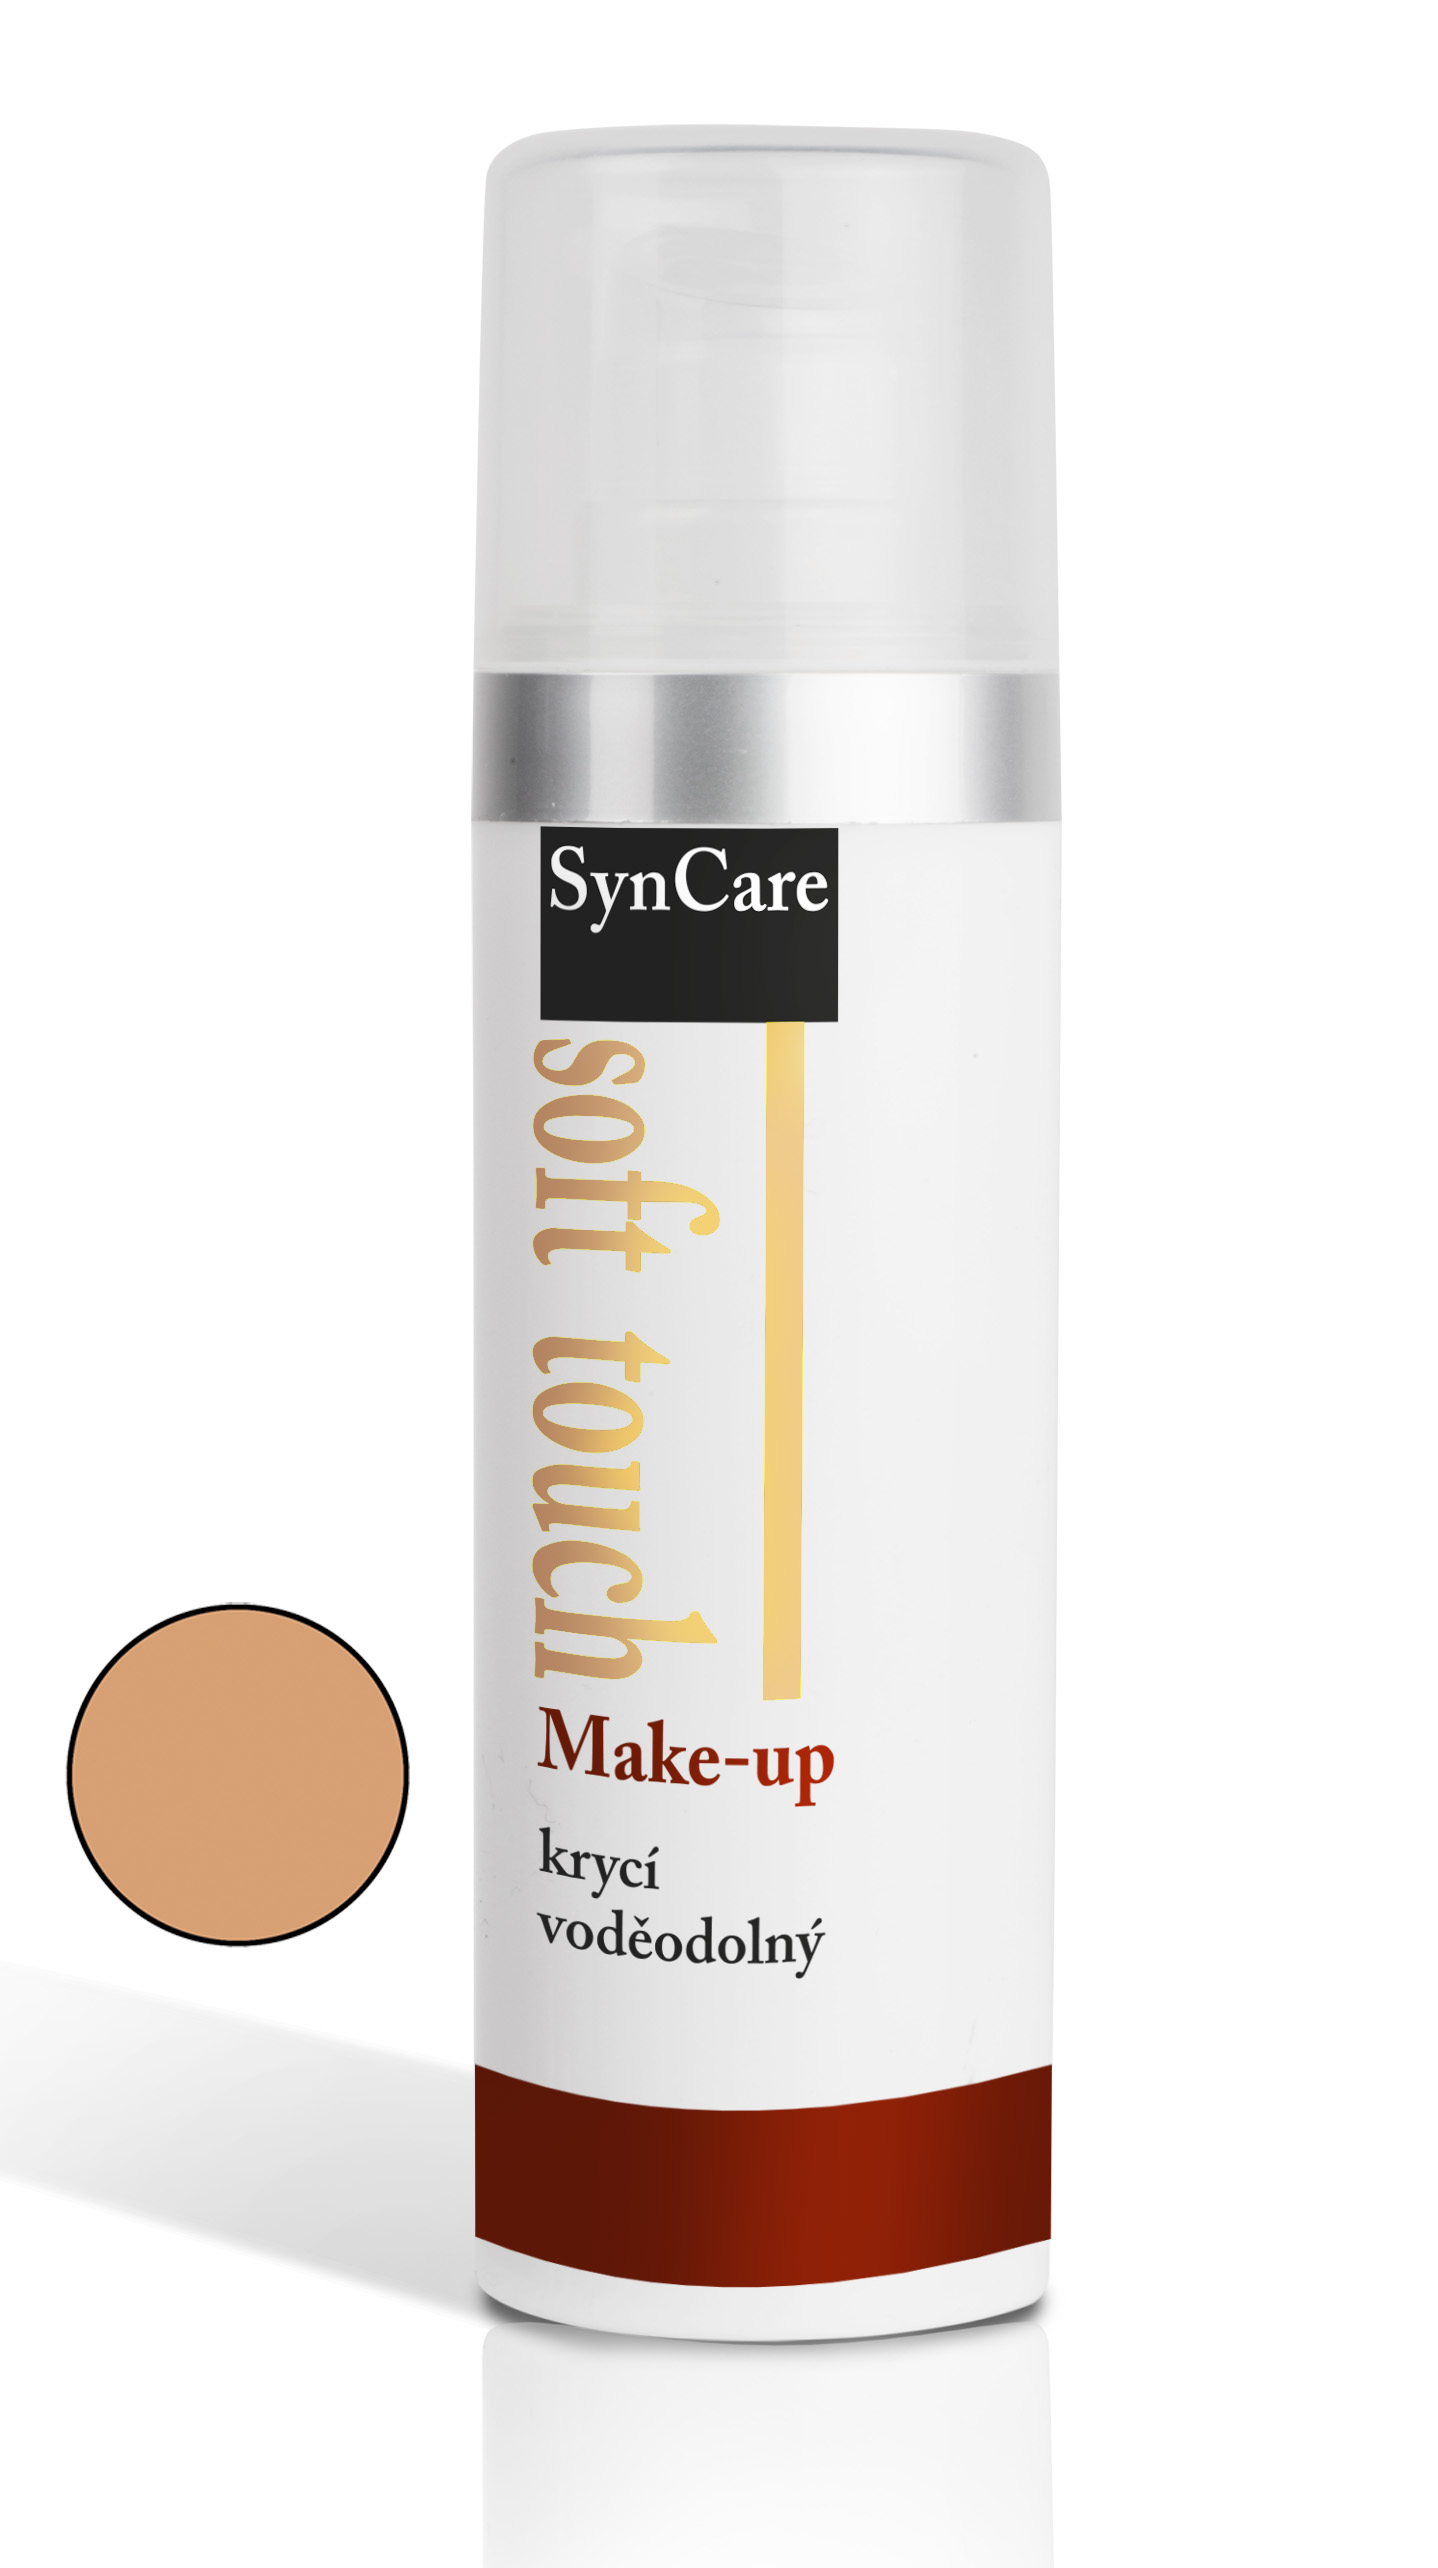 Soft Touch Make-up krycí voděodolný odstín 405 30ml